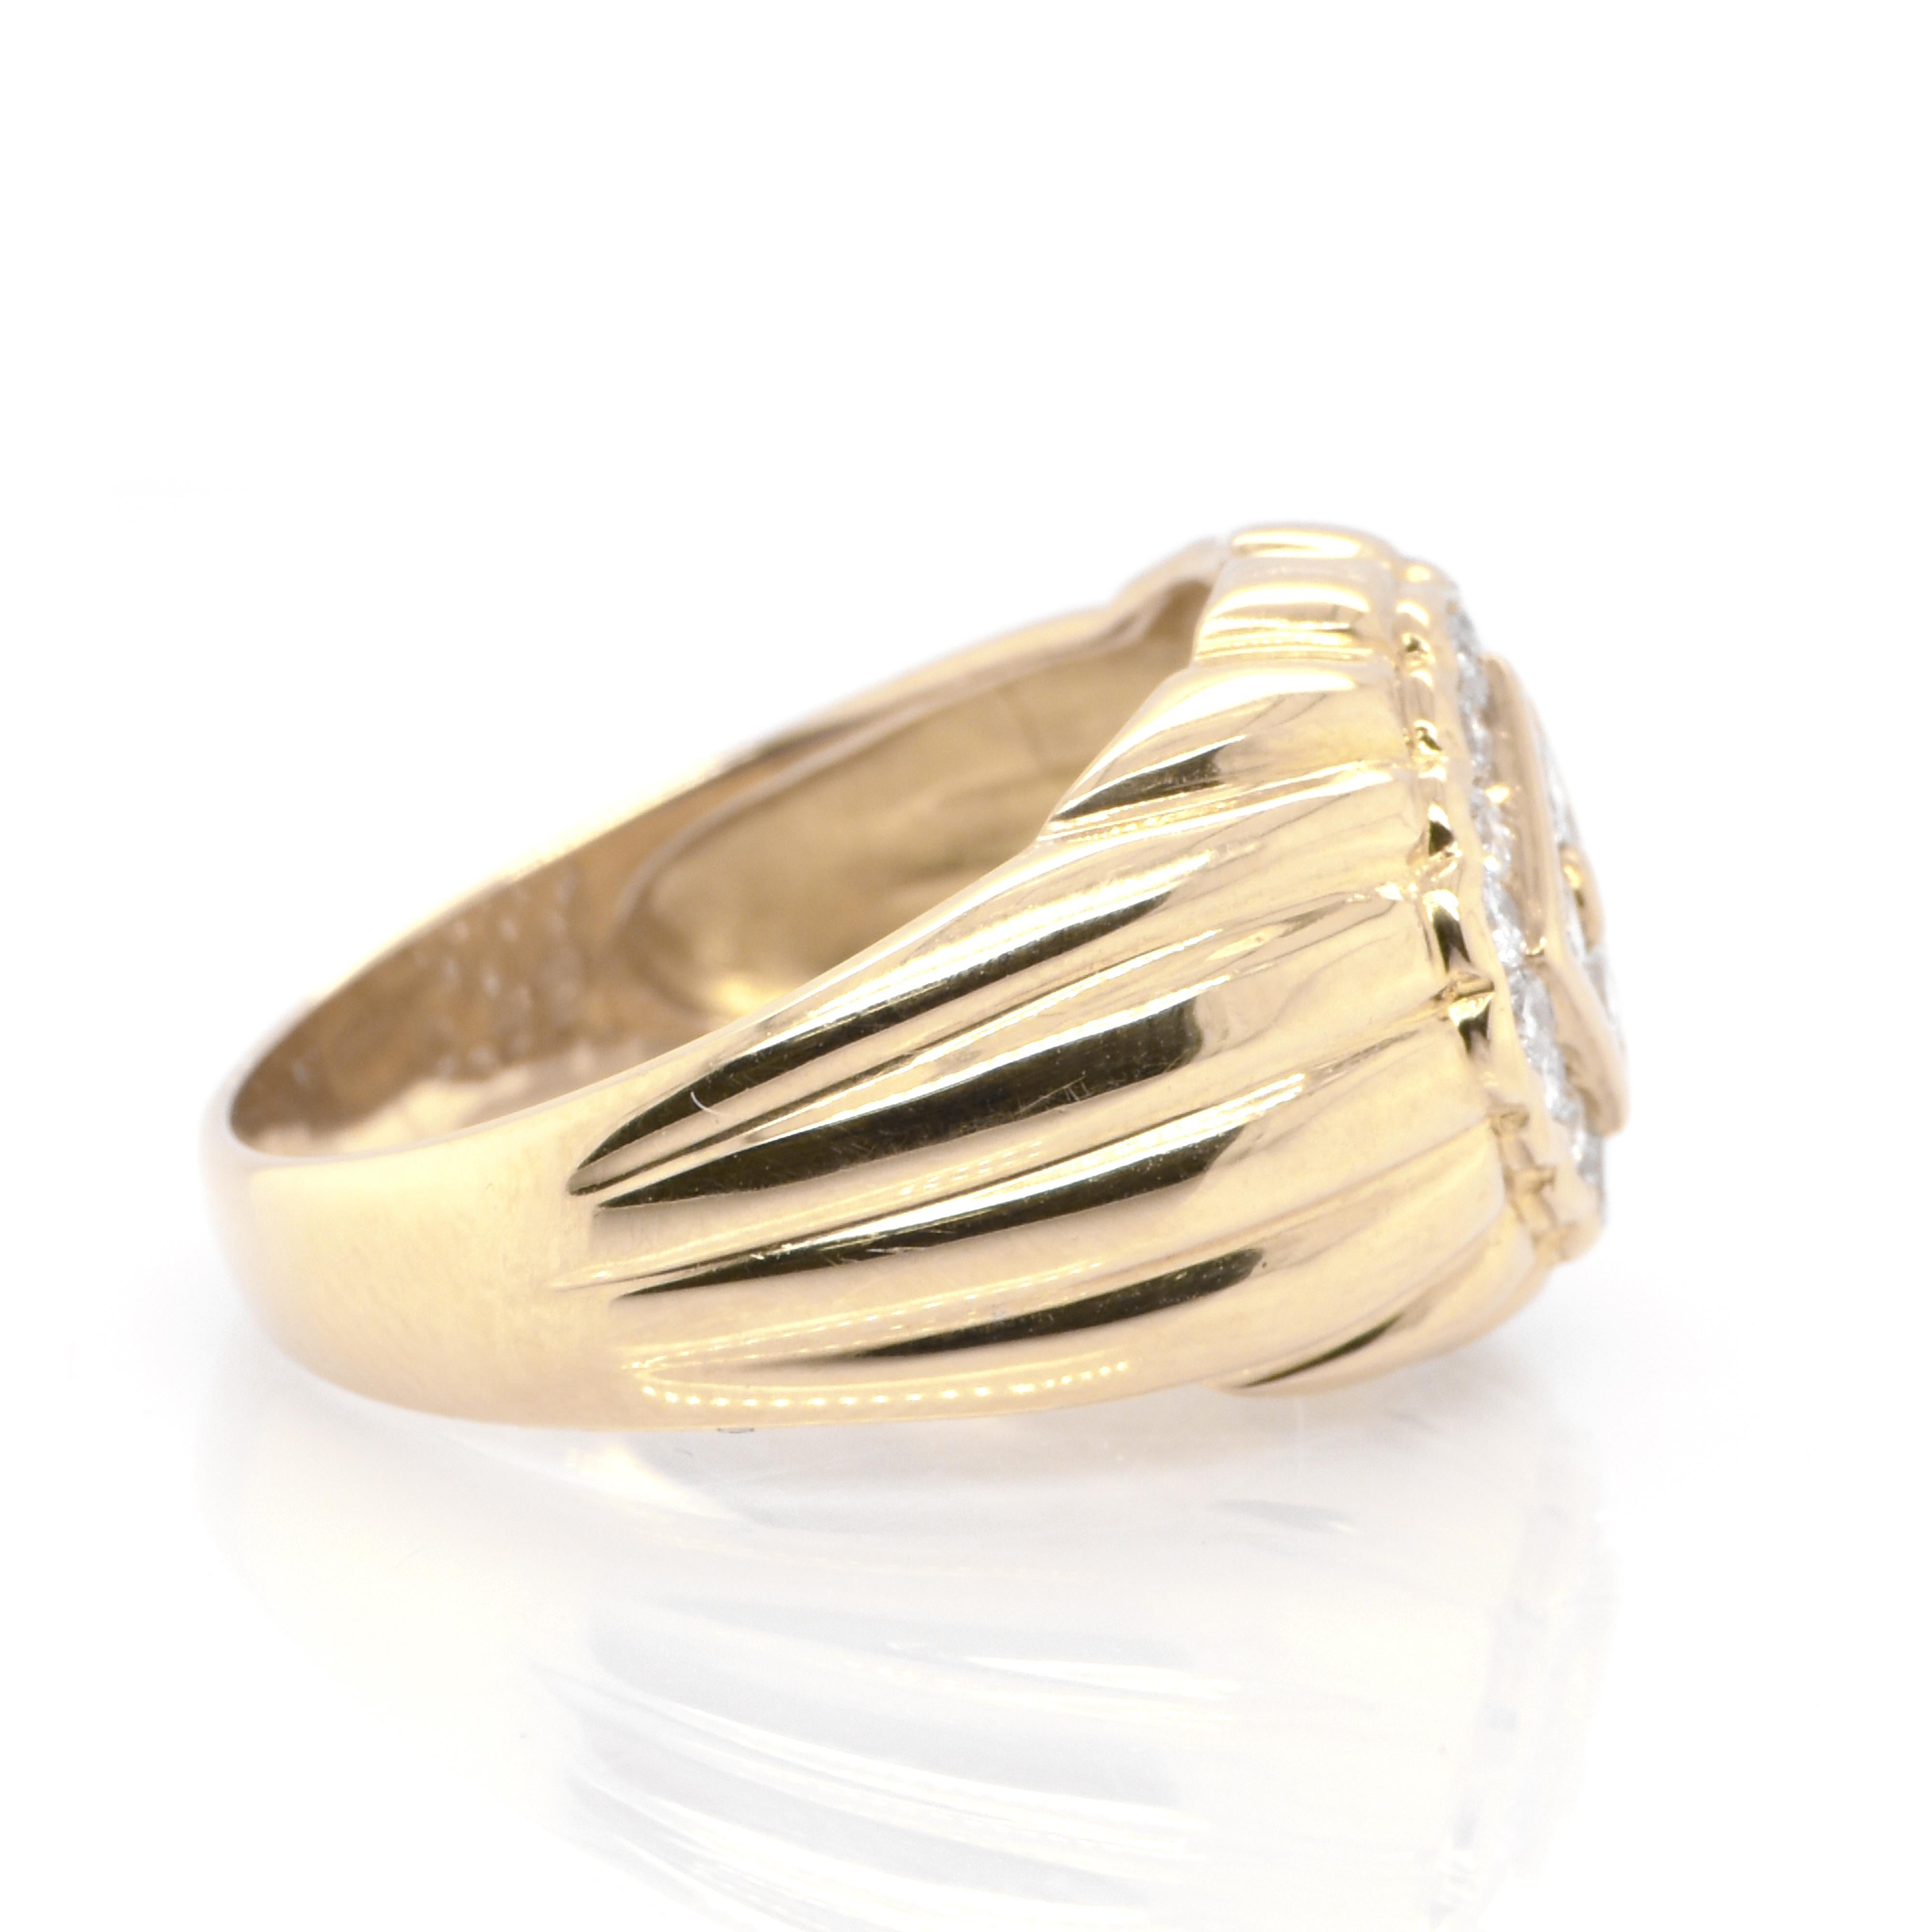 Round Cut 0.52 Carat Natural Diamond Signet Ring Set in 18 Karat Yellow Gold For Sale